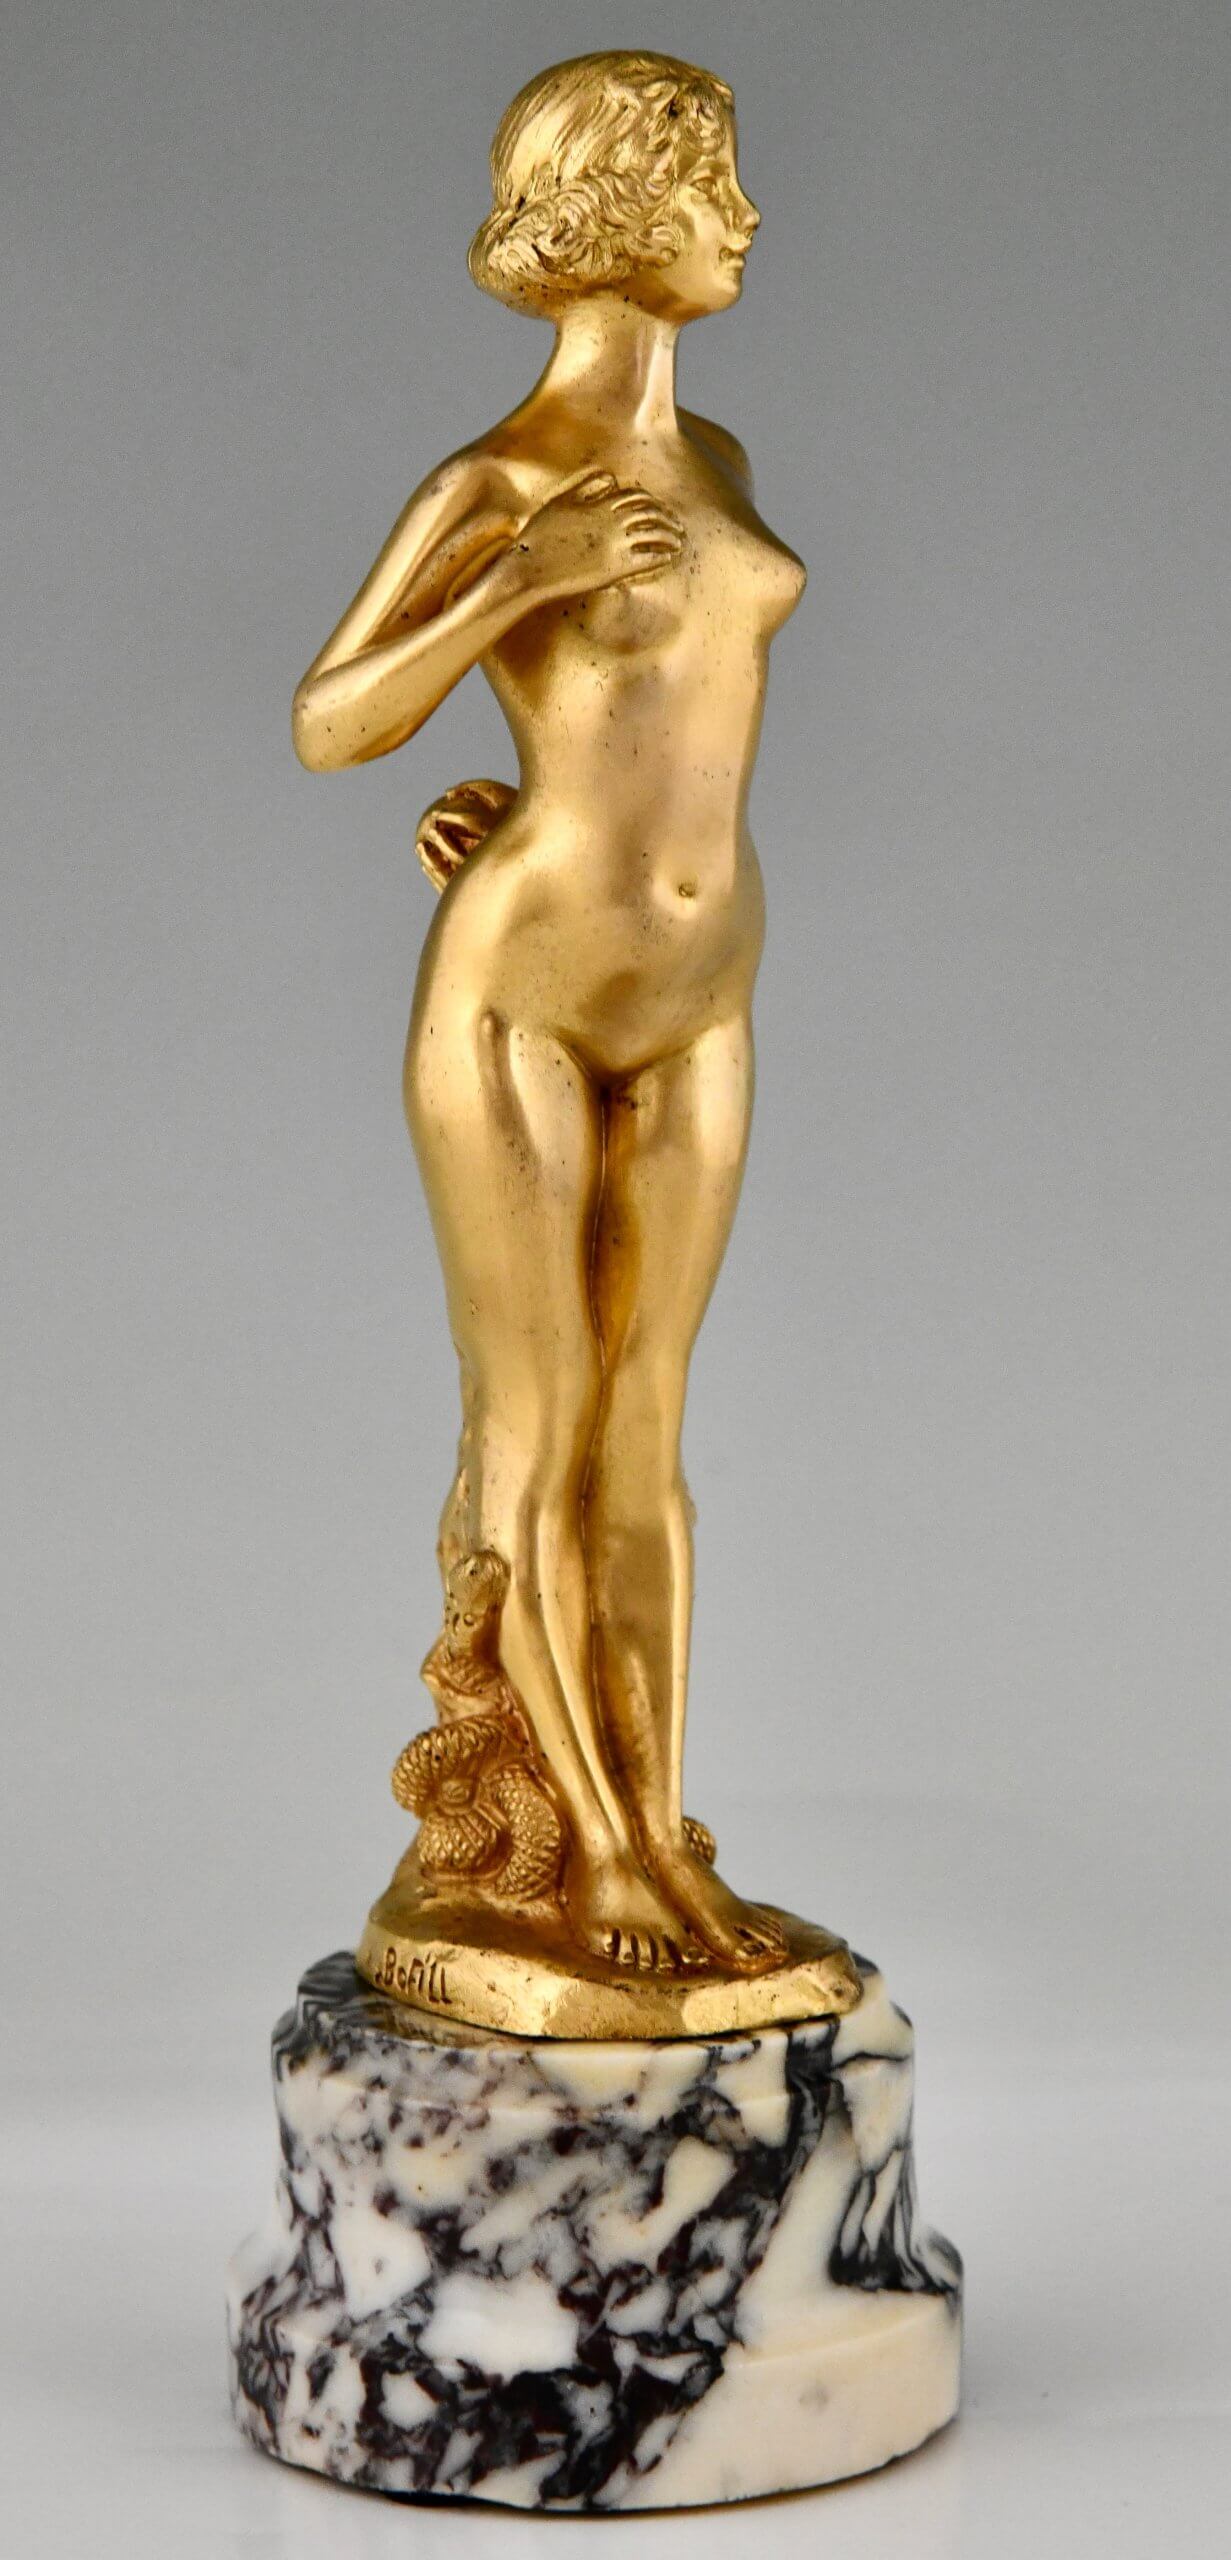 Pair of Art Nouveau bronze nude sculptures